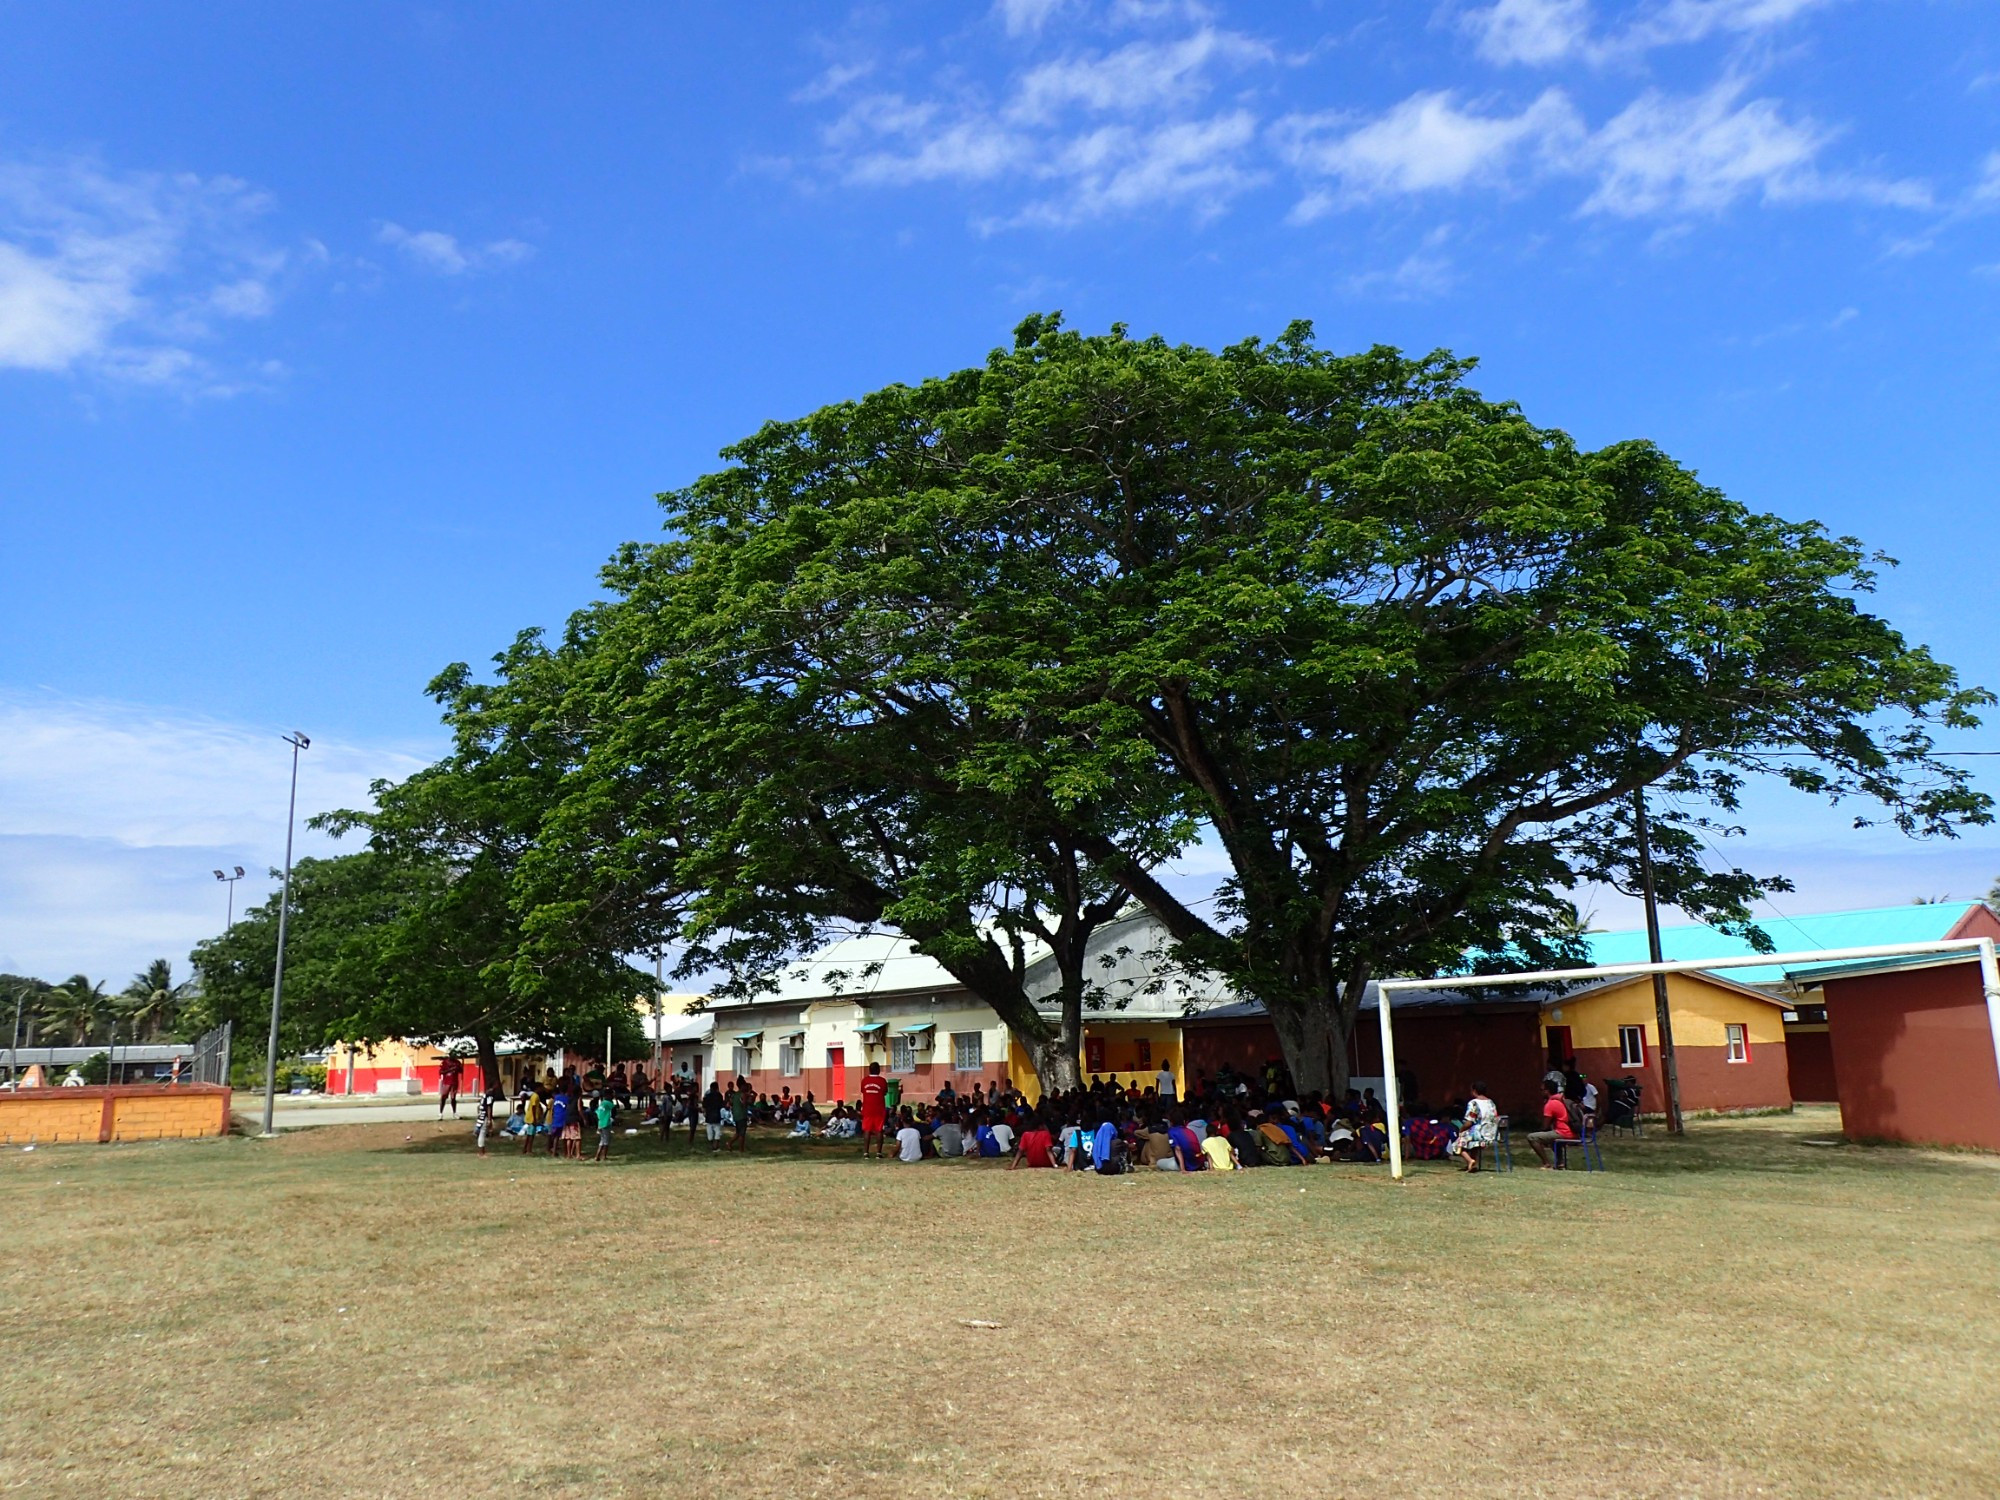 School Havila, New Caledonia